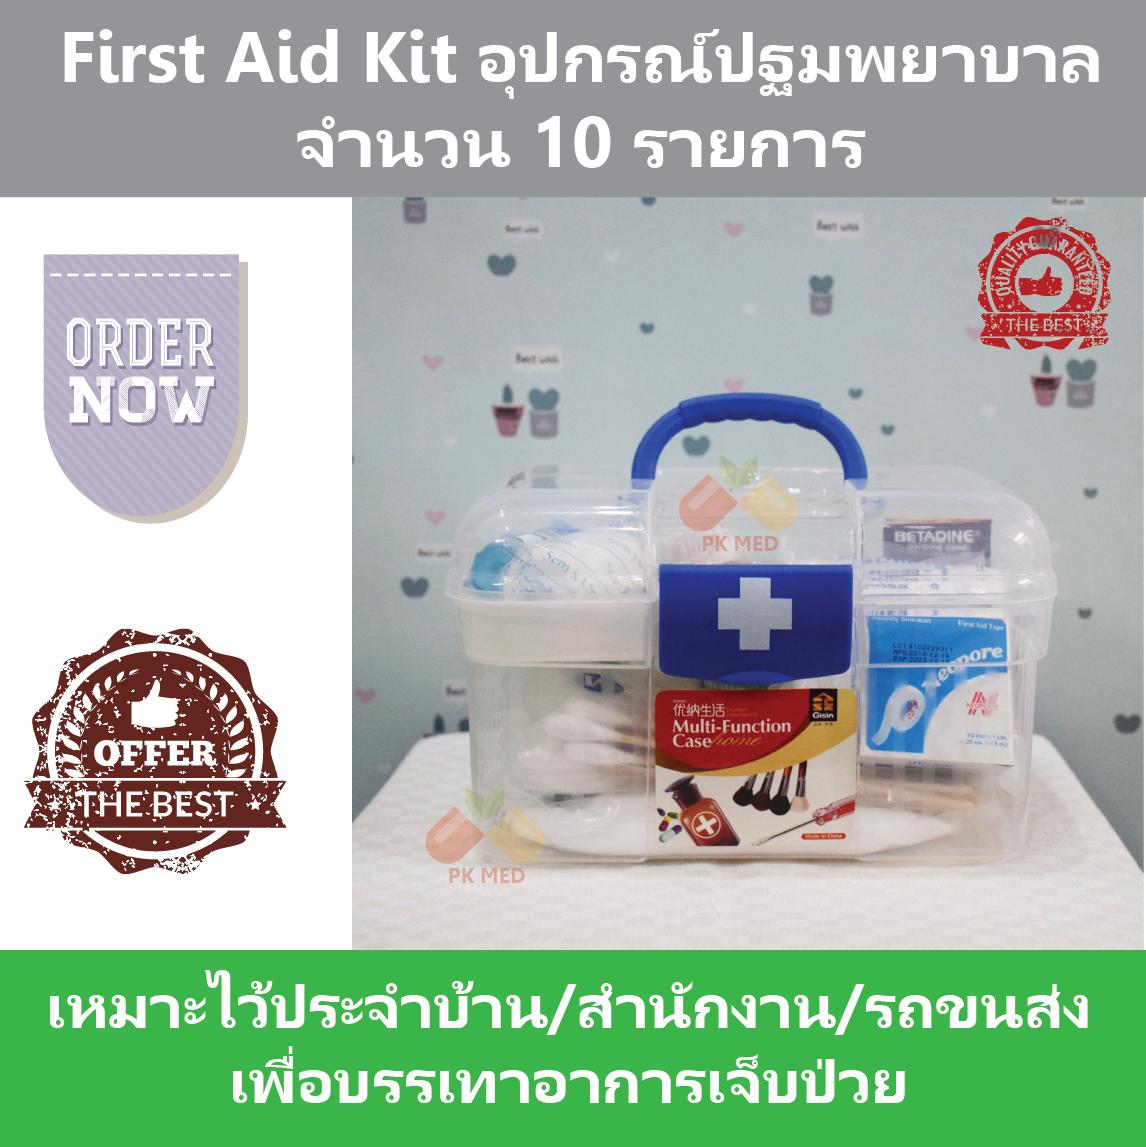 First Aid Kit ชุดปฐมพยาบาล จำนวน 10 รายการ บรรจุในกล่องอย่างดี